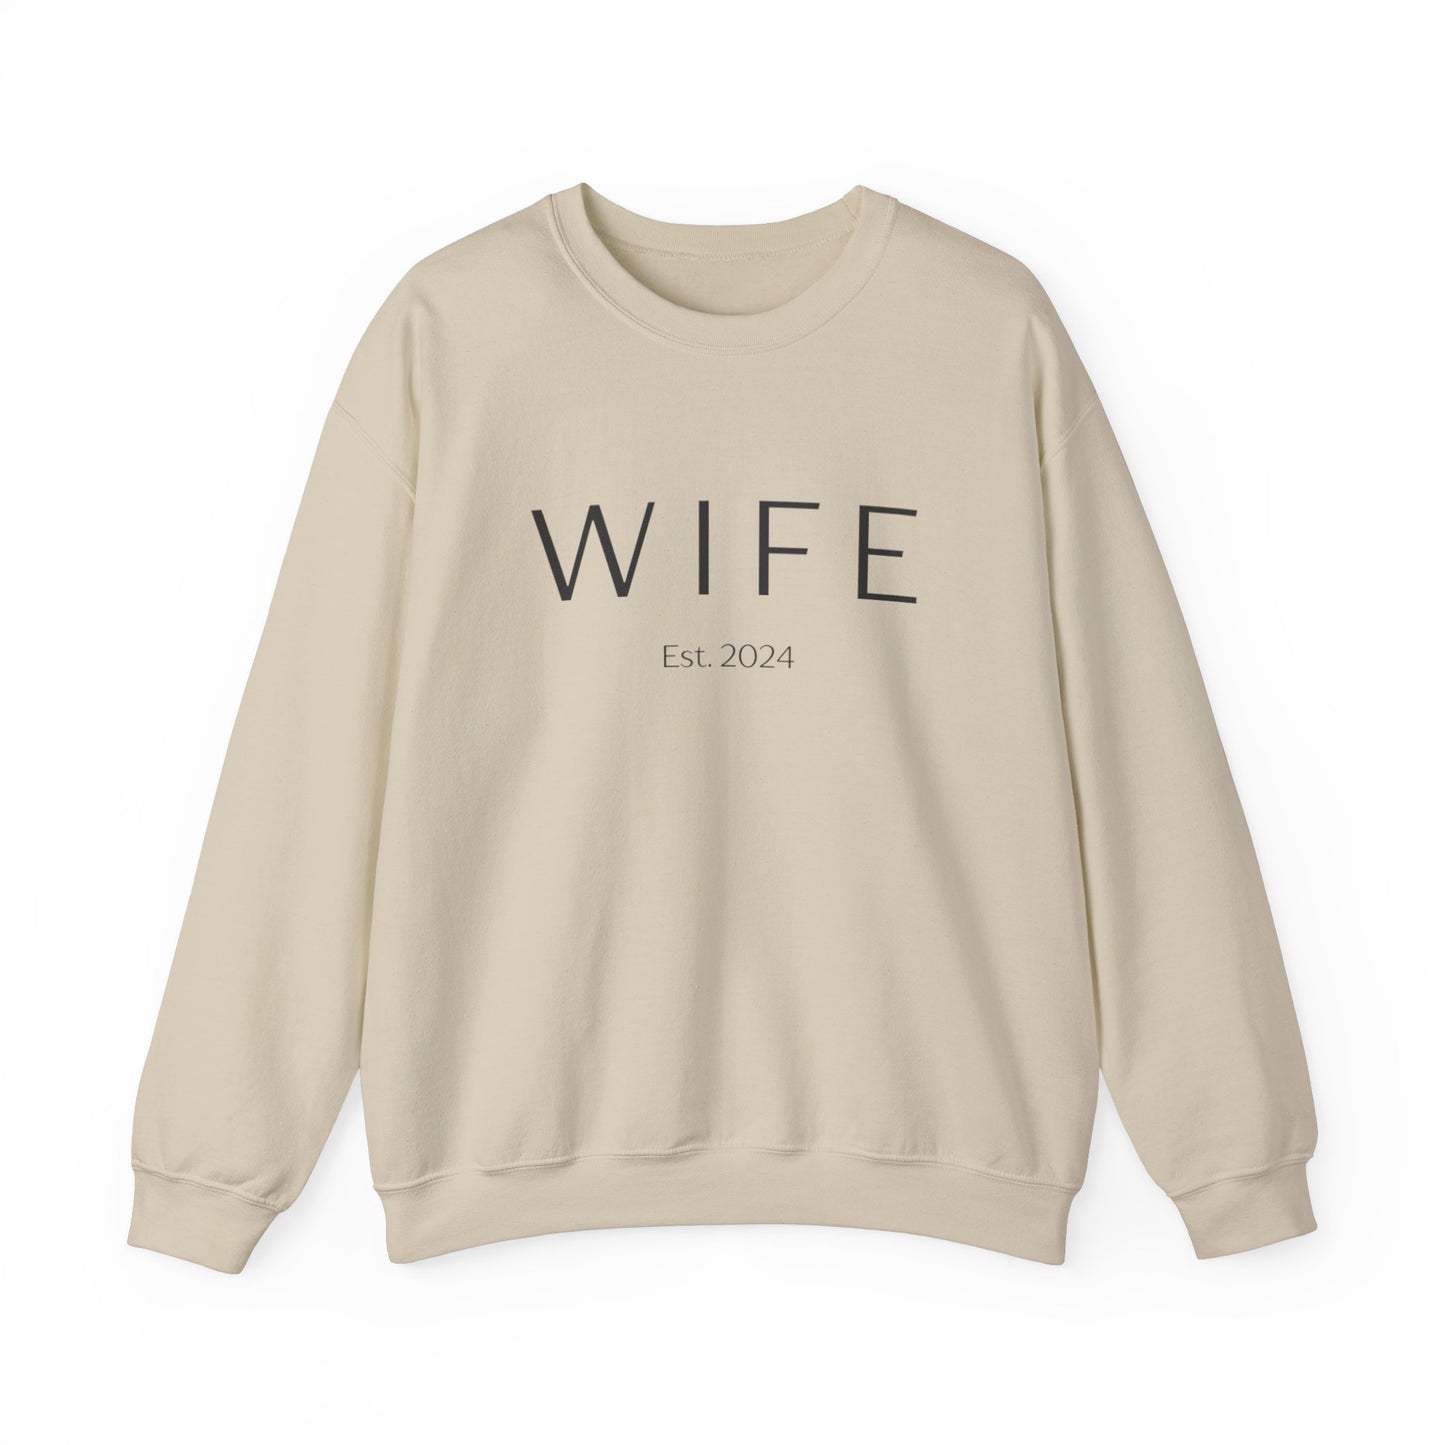 WIFE Est. 2024 Crewneck Sweatshirt